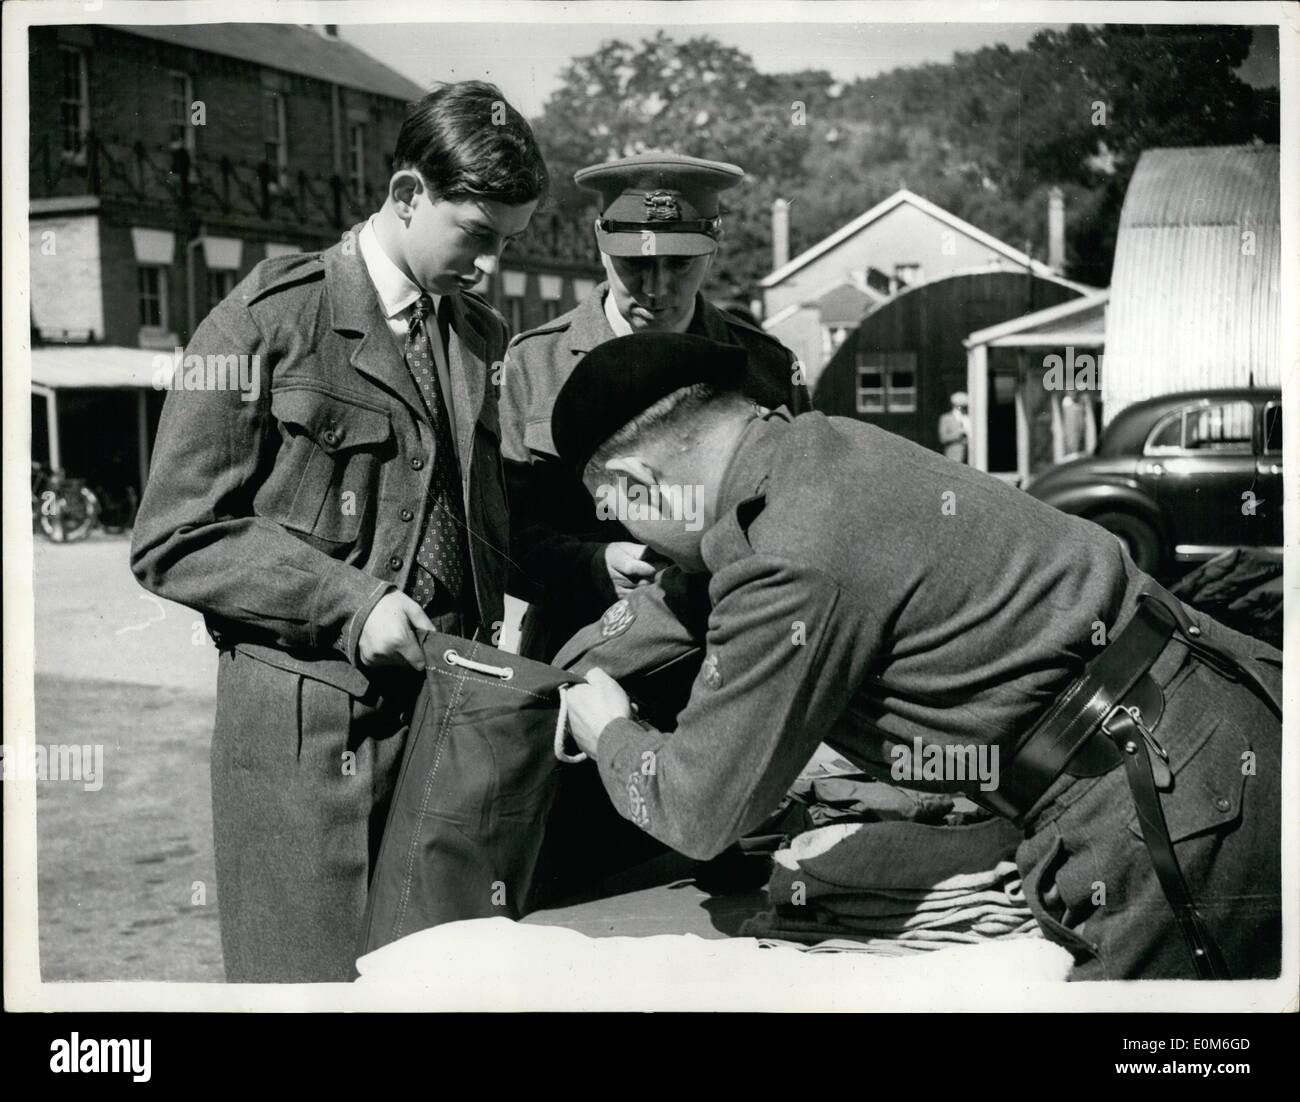 09 septembre, 1953 - se joint à l'armée de Duc de Kent. Recevoir son kit. : H.R.H&gt ; le duc de Kent est arrivé ce matin à Sandhurst kitting pour out- lors de sa première journée dans l'armée. La photo montre la grande H.A. Havilland regardent le R.Q.N.S. Burton A.C. met en kit le Kitbag détenu par le duc de Kent - aujourd'hui à Sandhurst. Banque D'Images